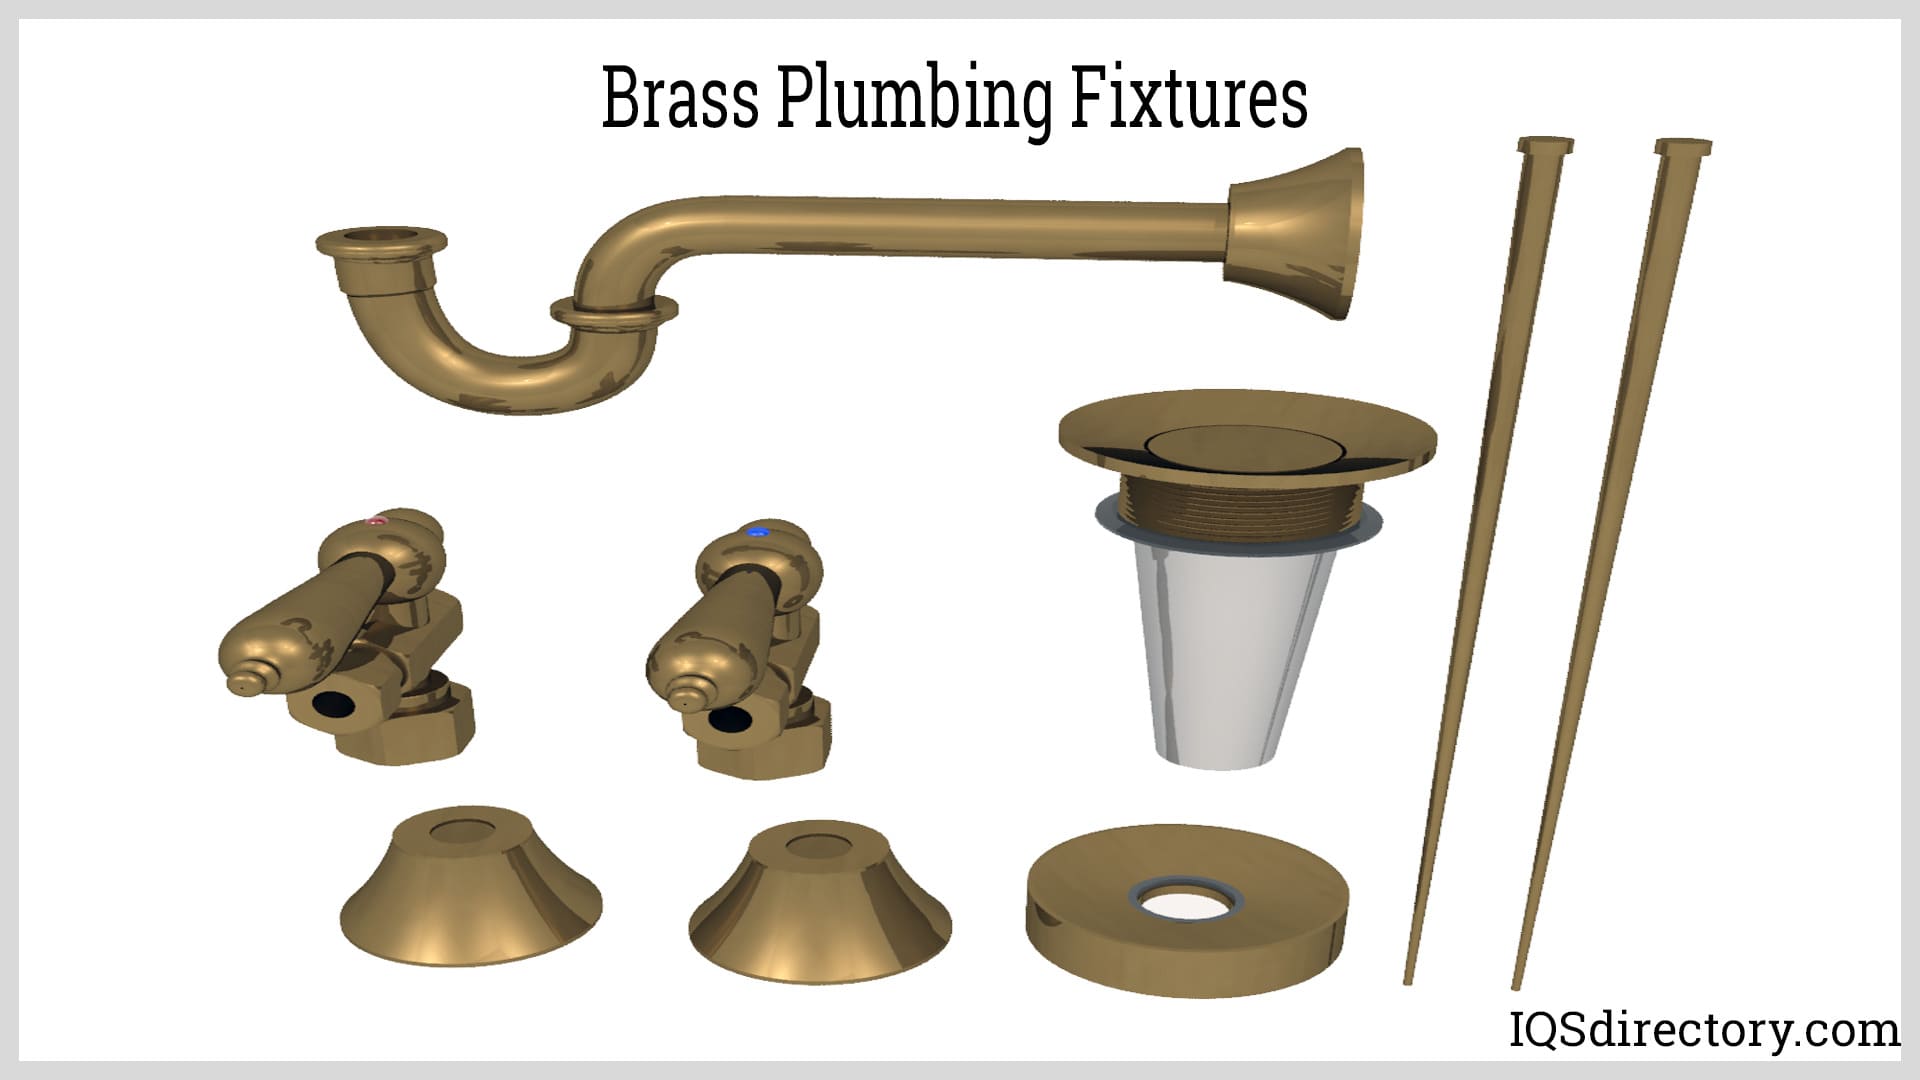 Brass Plumbing Fixtures